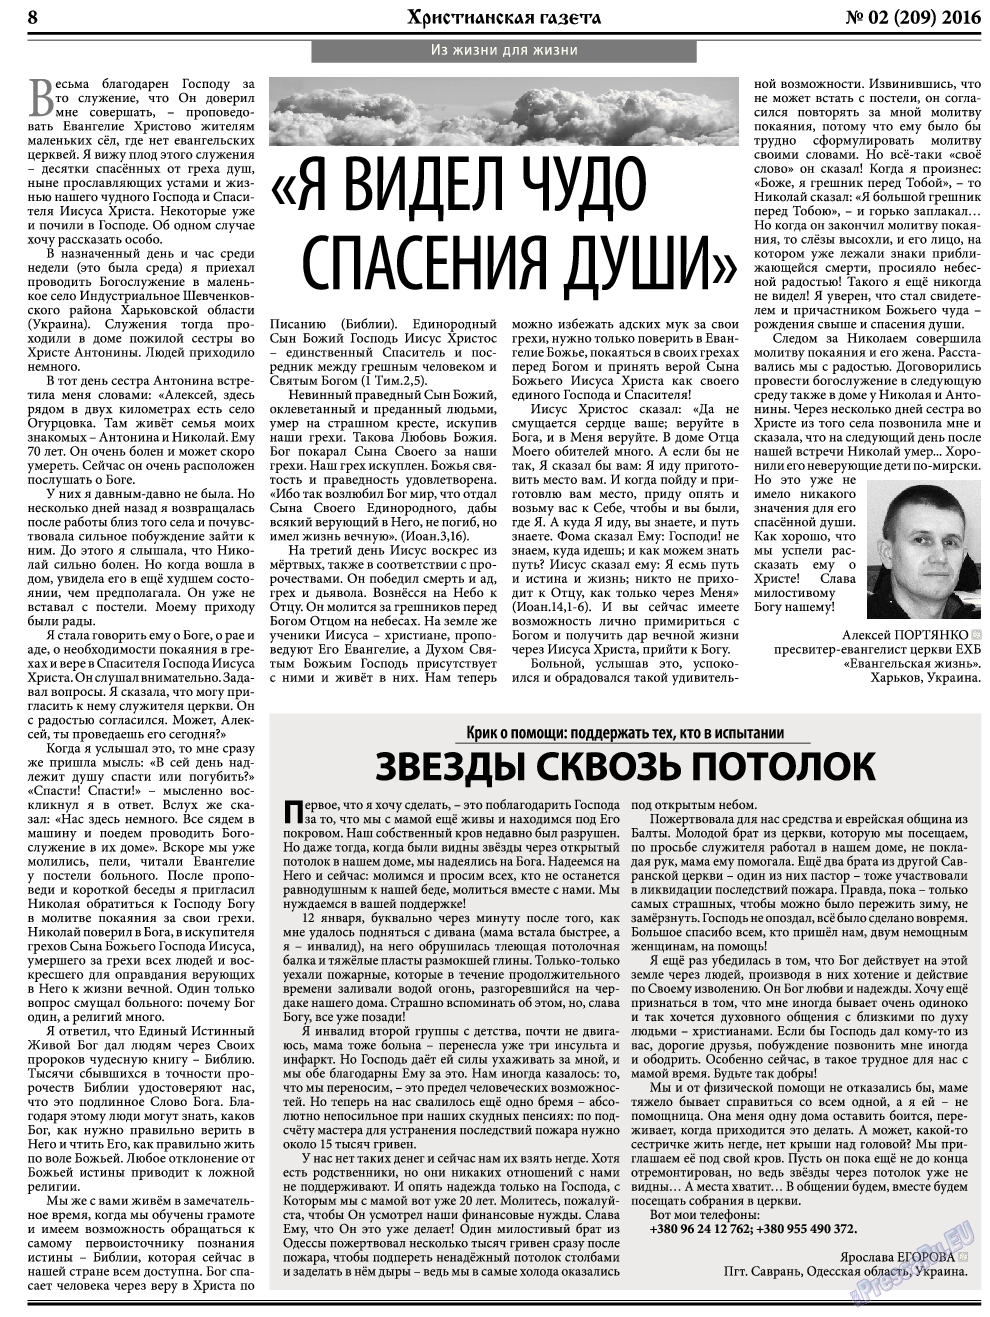 Христианская газета, газета. 2016 №2 стр.8